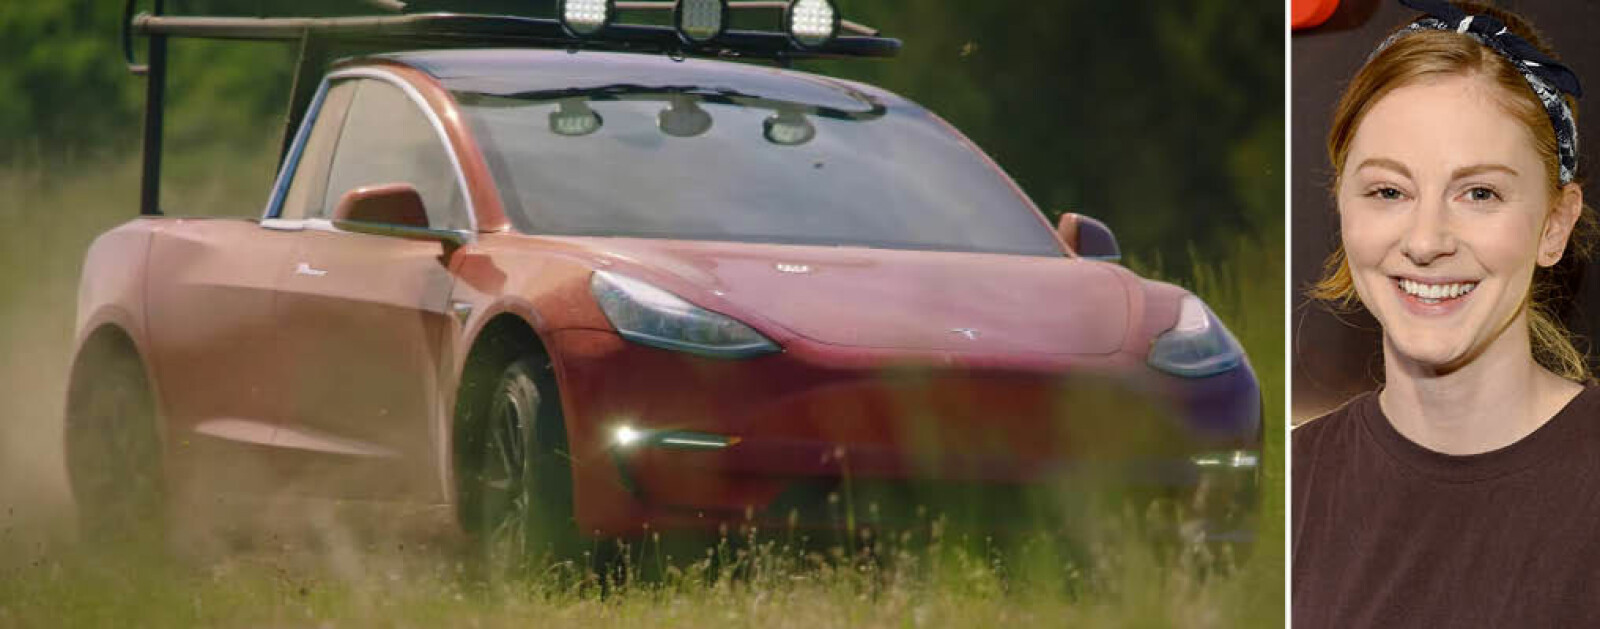 TRUCLA: Tesla Model 3 + pickup = Trucla. Den svenske Youtube-stjernen Simone Giertz har bygd om en Model 3 til å bli en pickup.